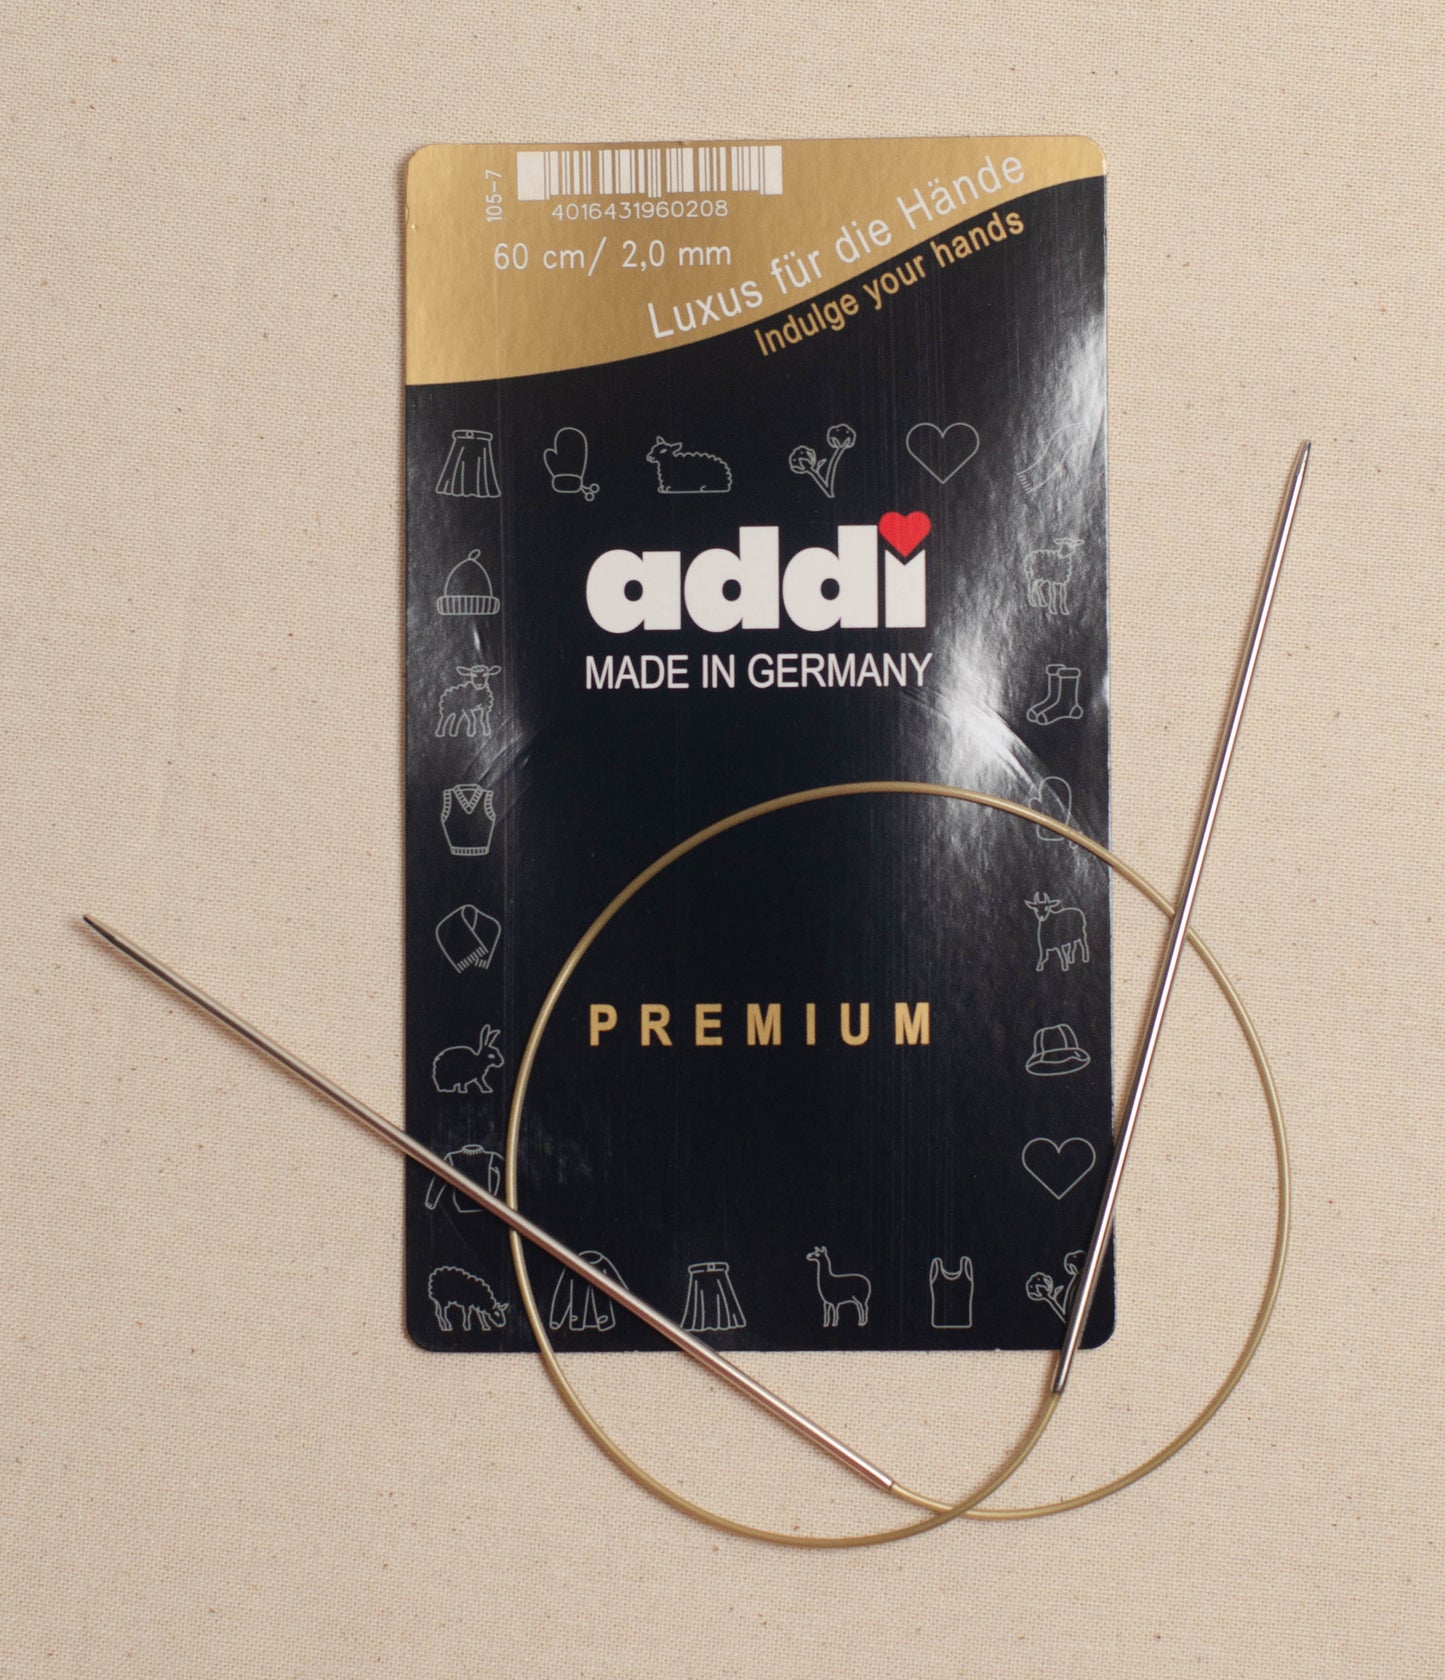 60cm/ 2.0mm Addi Circular Knitting Needles